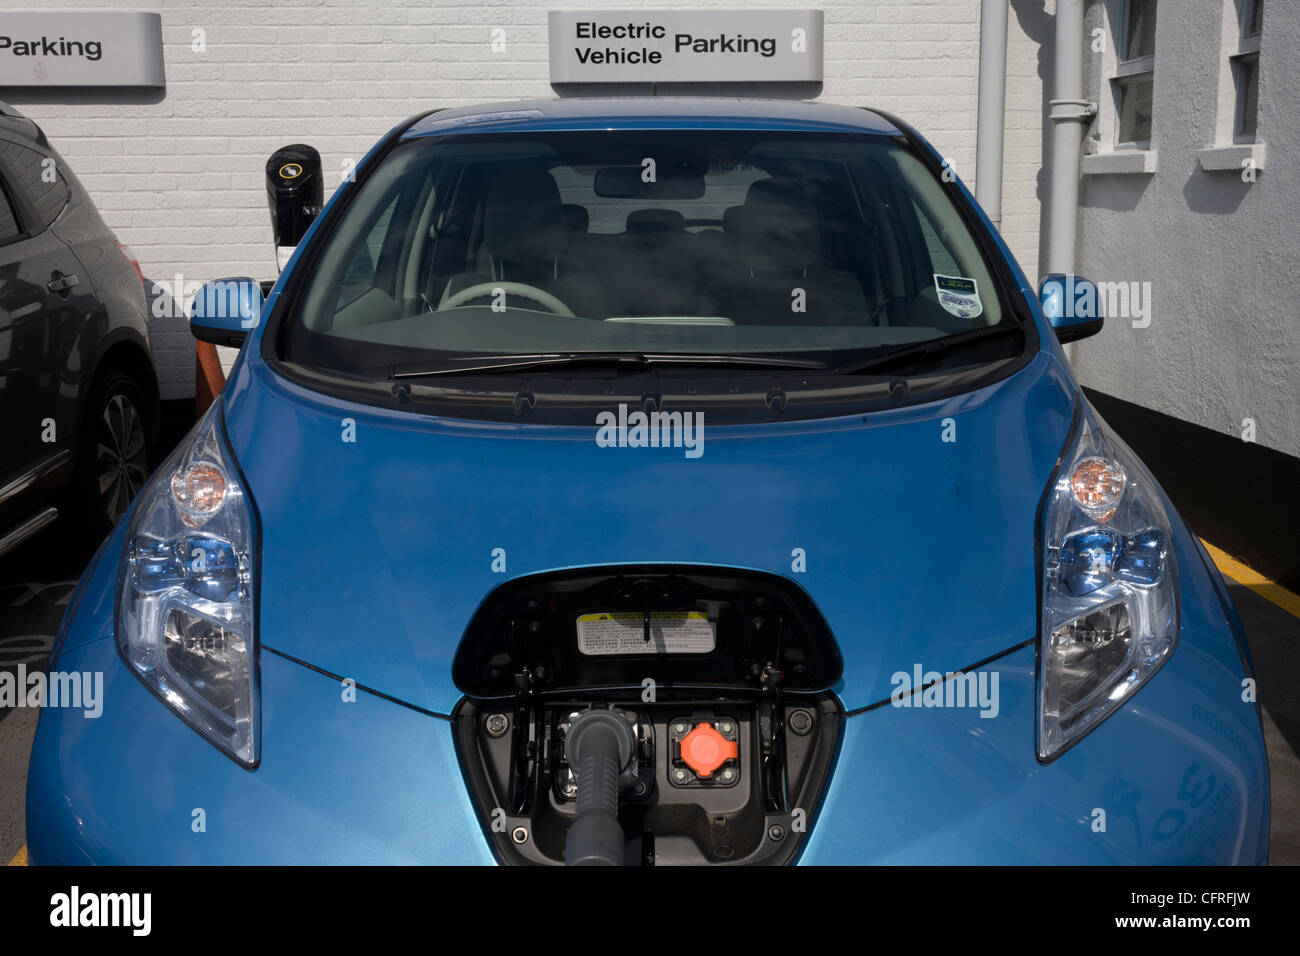 La charge rapide d'une voiture électrique Nissan LEAF à un point de recharge électrique offrant un VE 30 minute ..(Plus de description) Banque D'Images